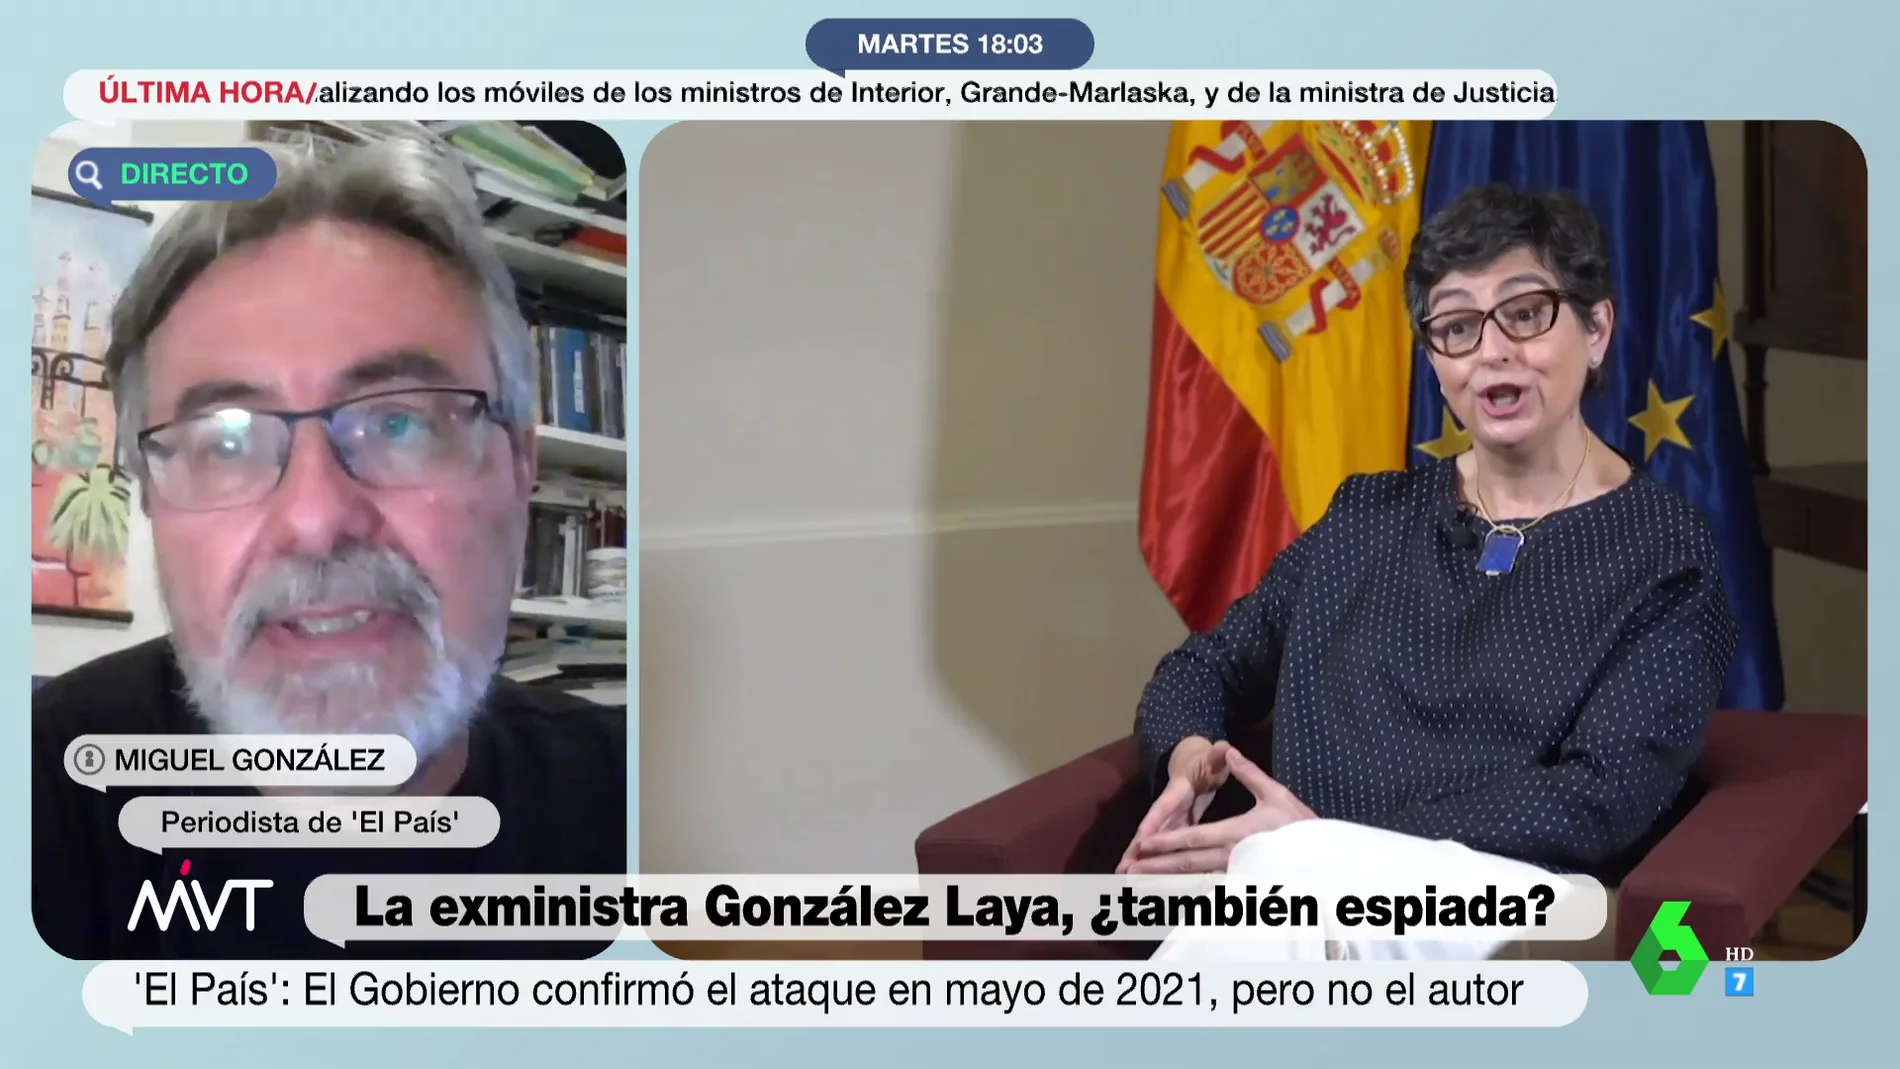 La teoría de Miguel González sobre por qué no se investiga el móvil de la exministra Laya